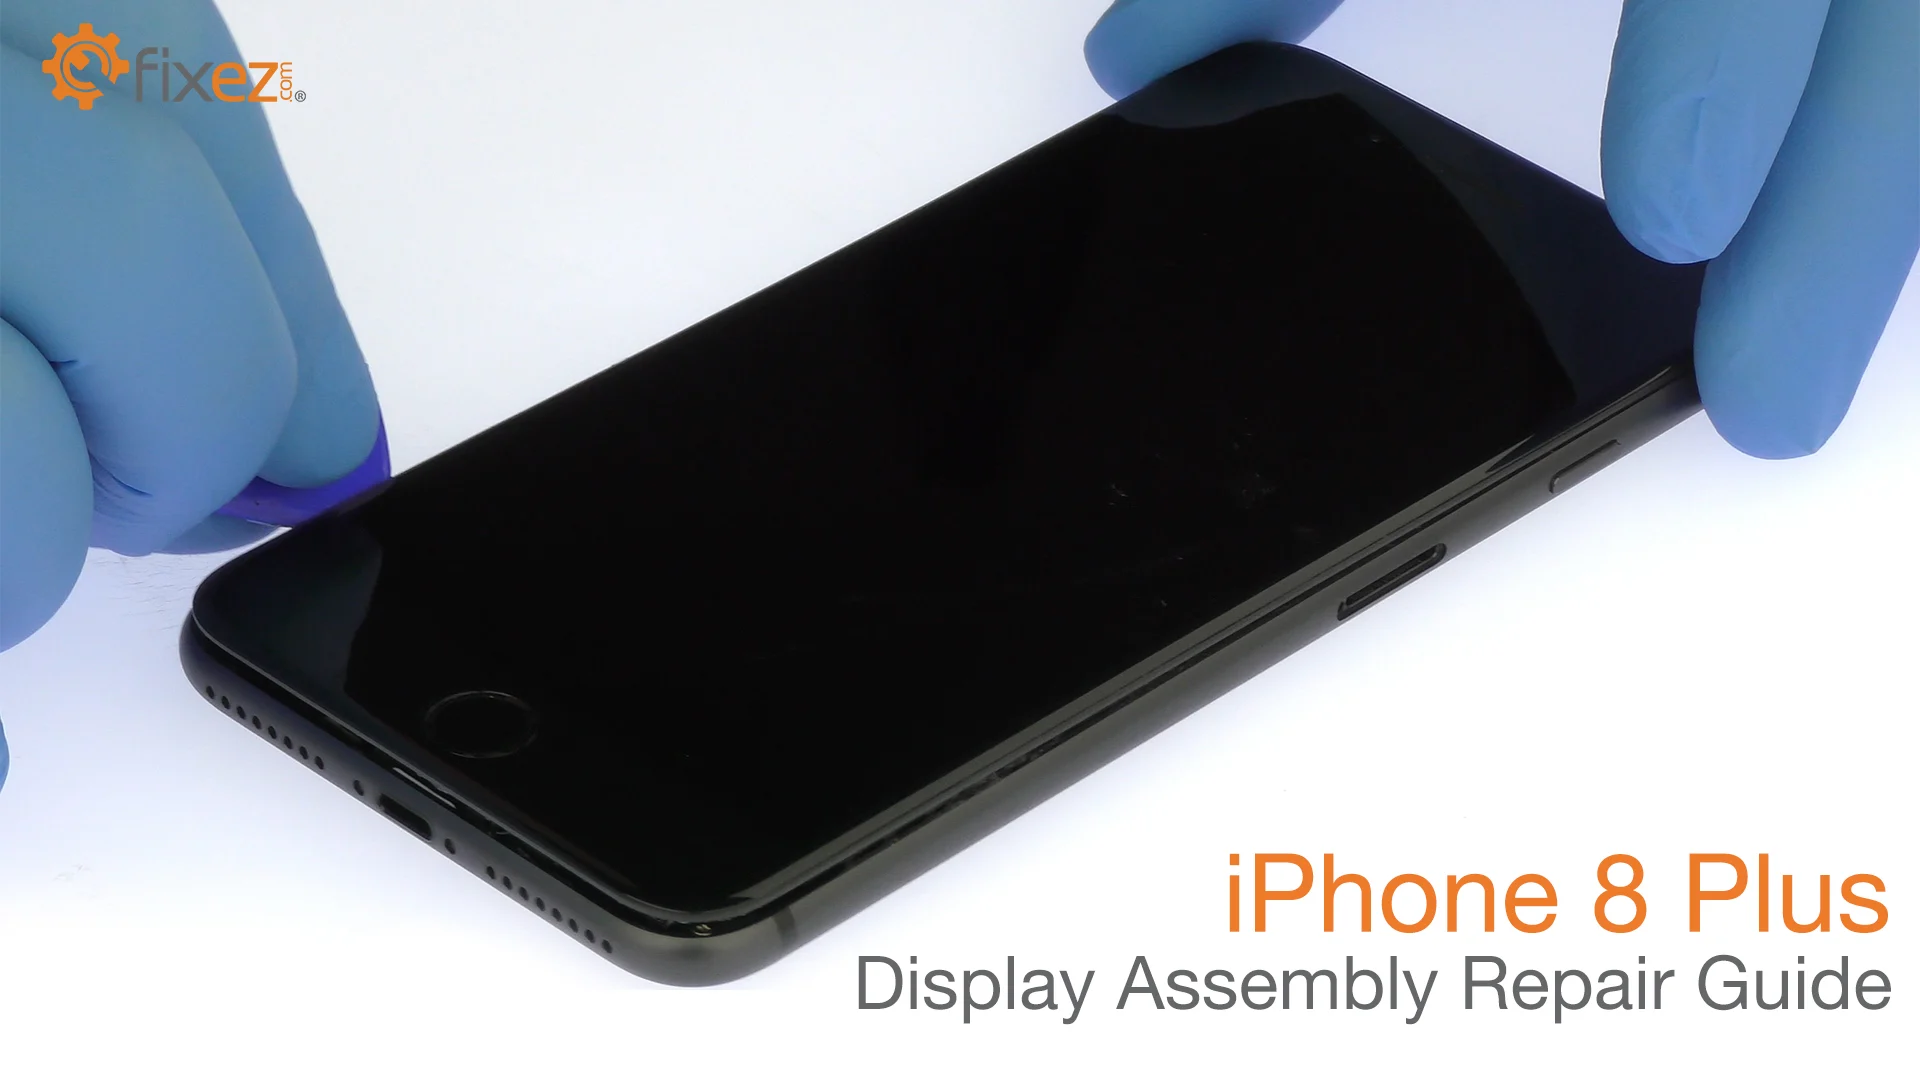 iPhone 8 Plus Screen Repair Guide